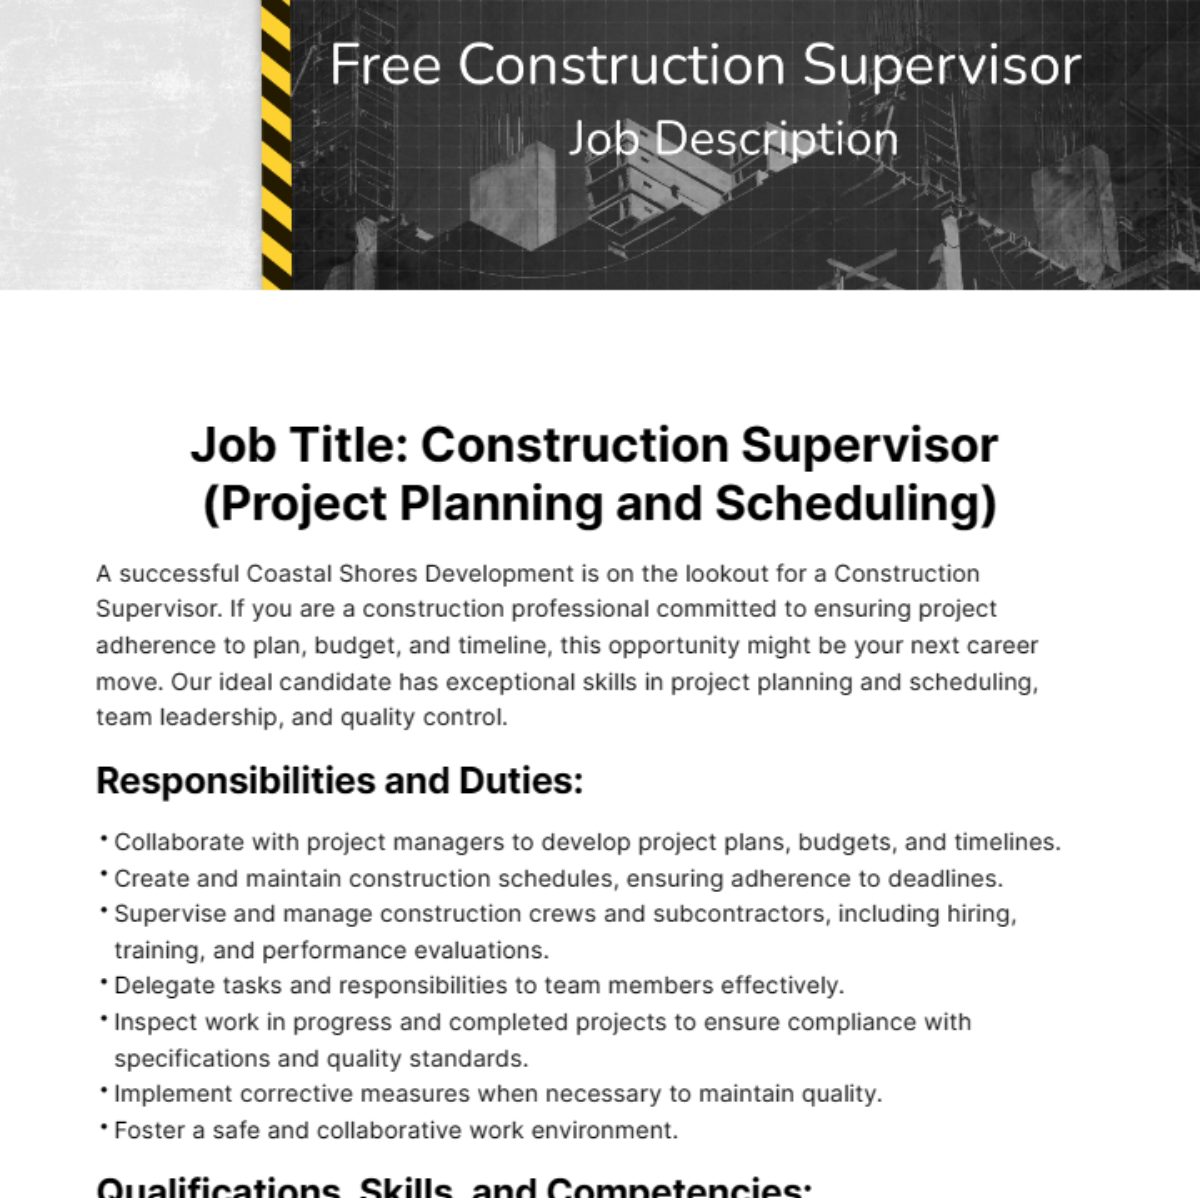 Construction Supervisor Job Description Template - Edit Online ...